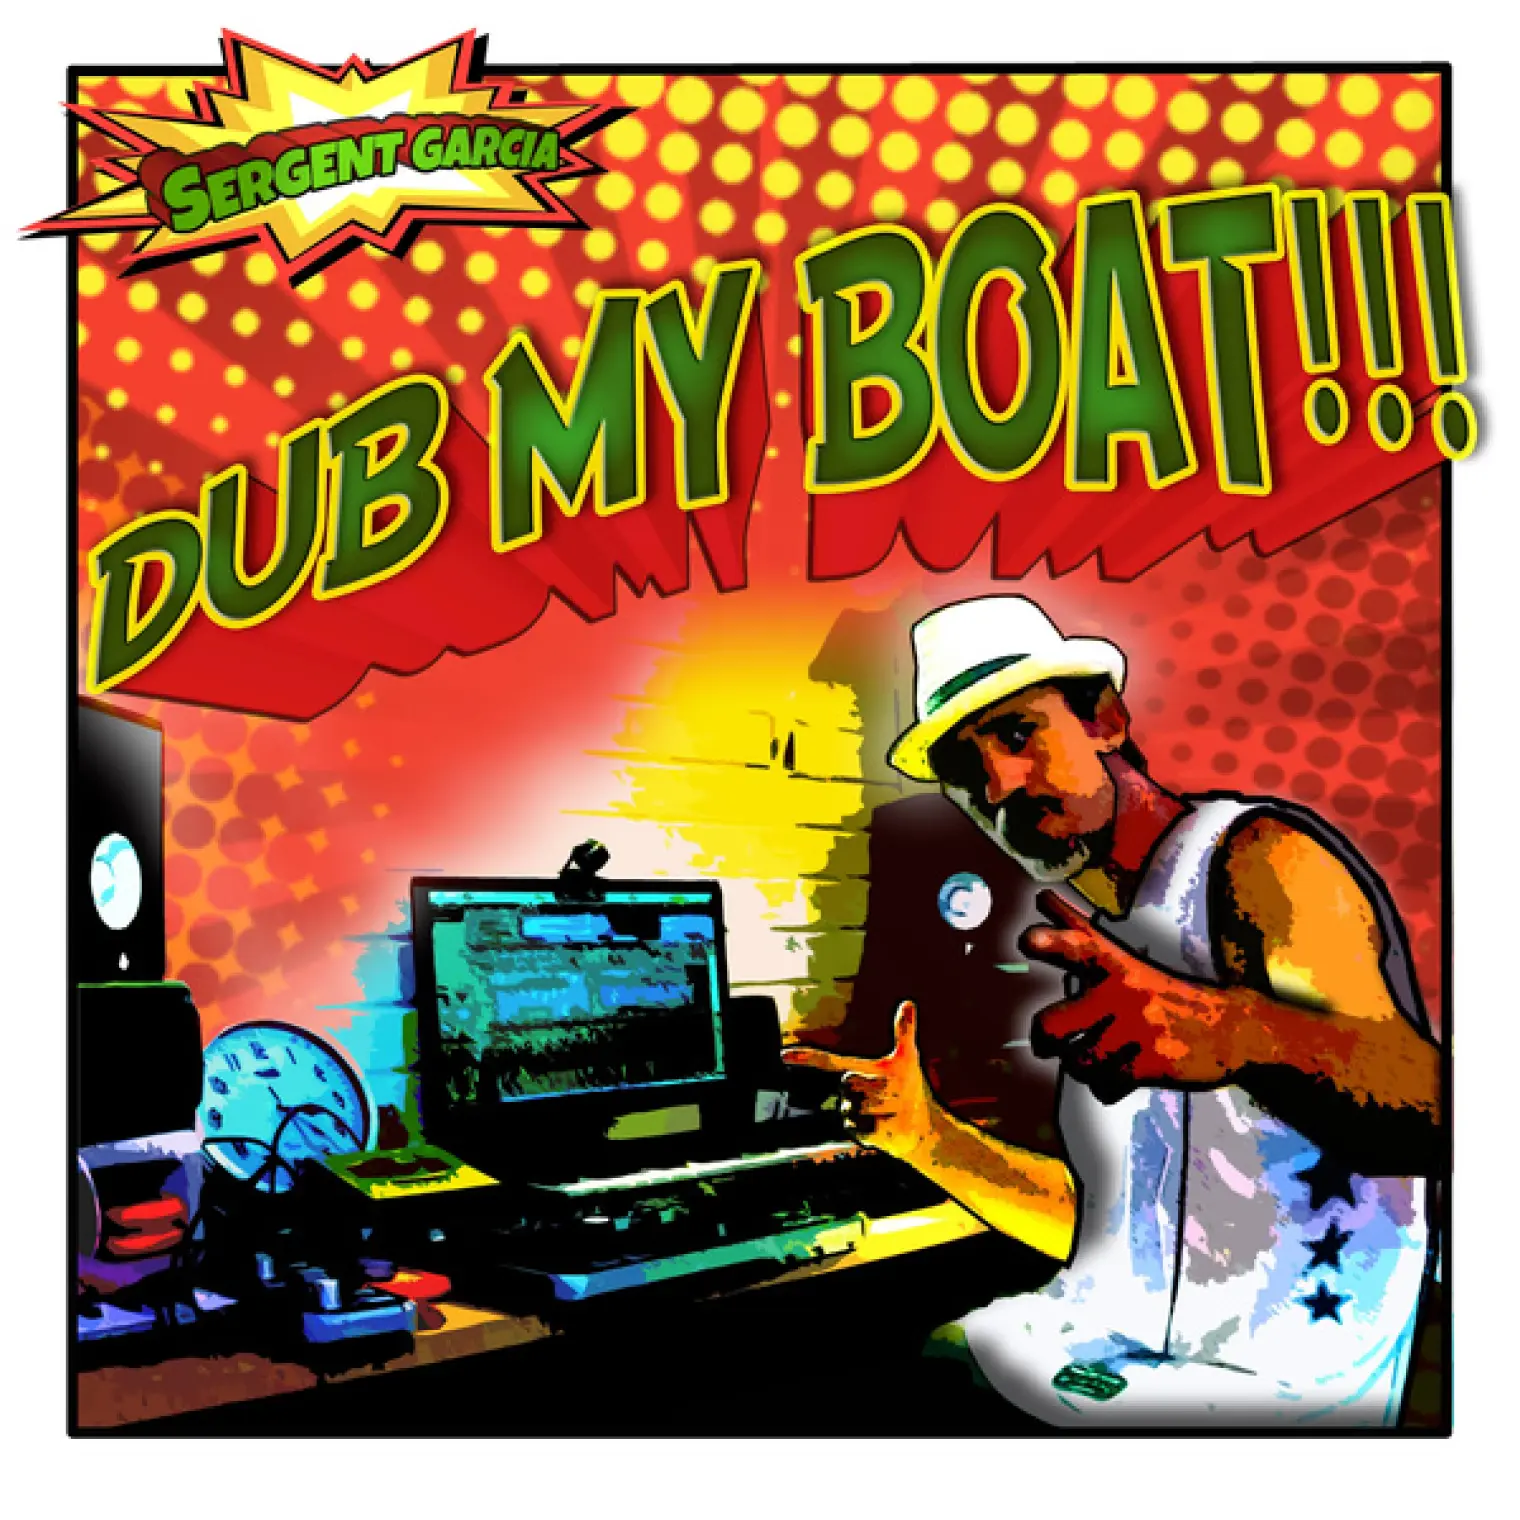 Dub My Boat -  Sergent Garcia 